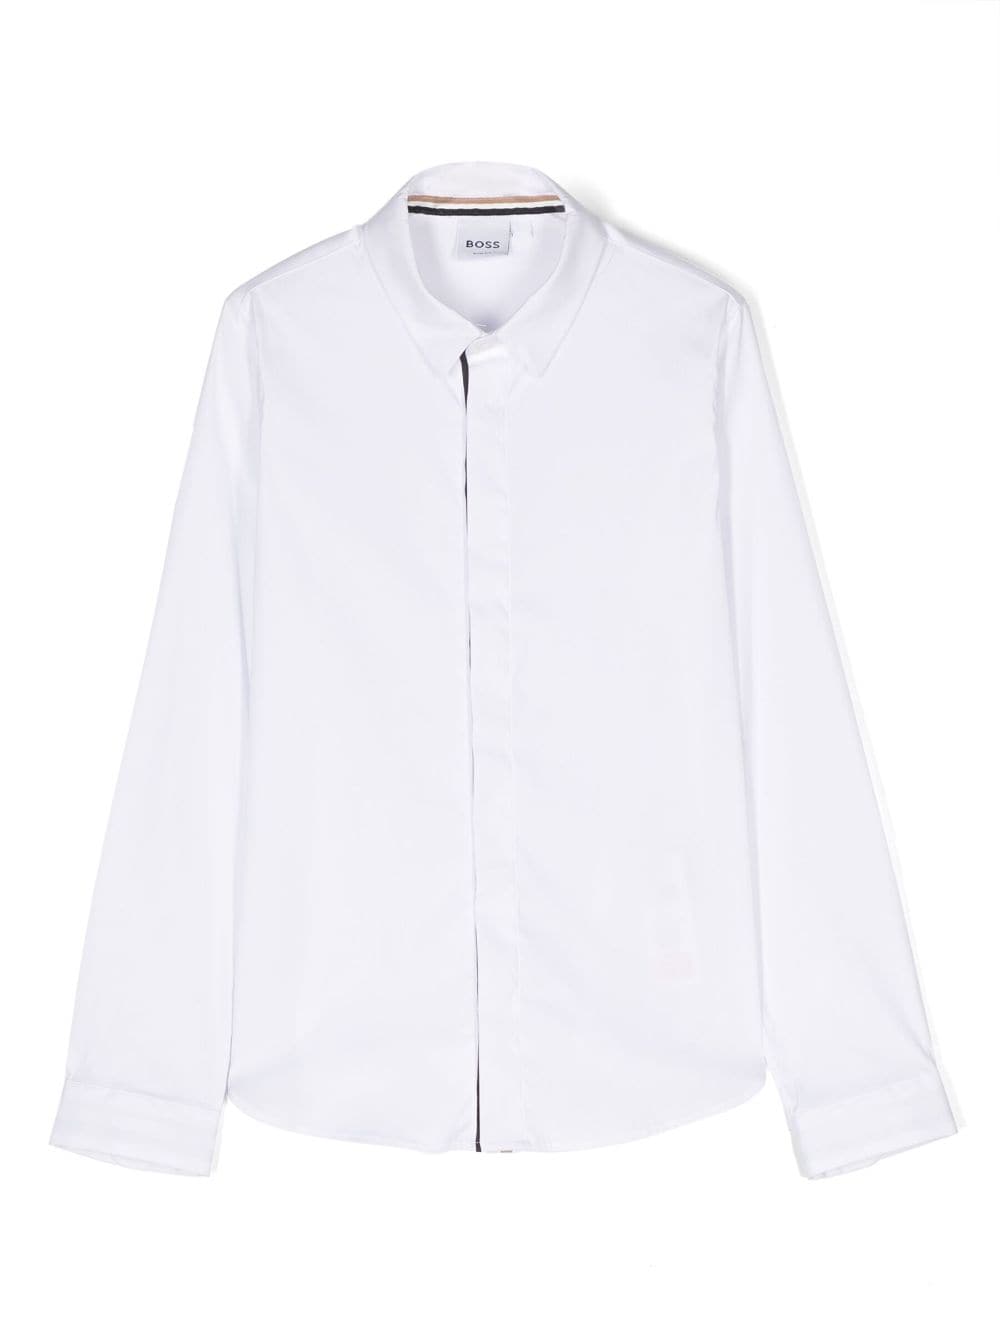 BOSS Kidswear long-sleeve button-up shirt - White